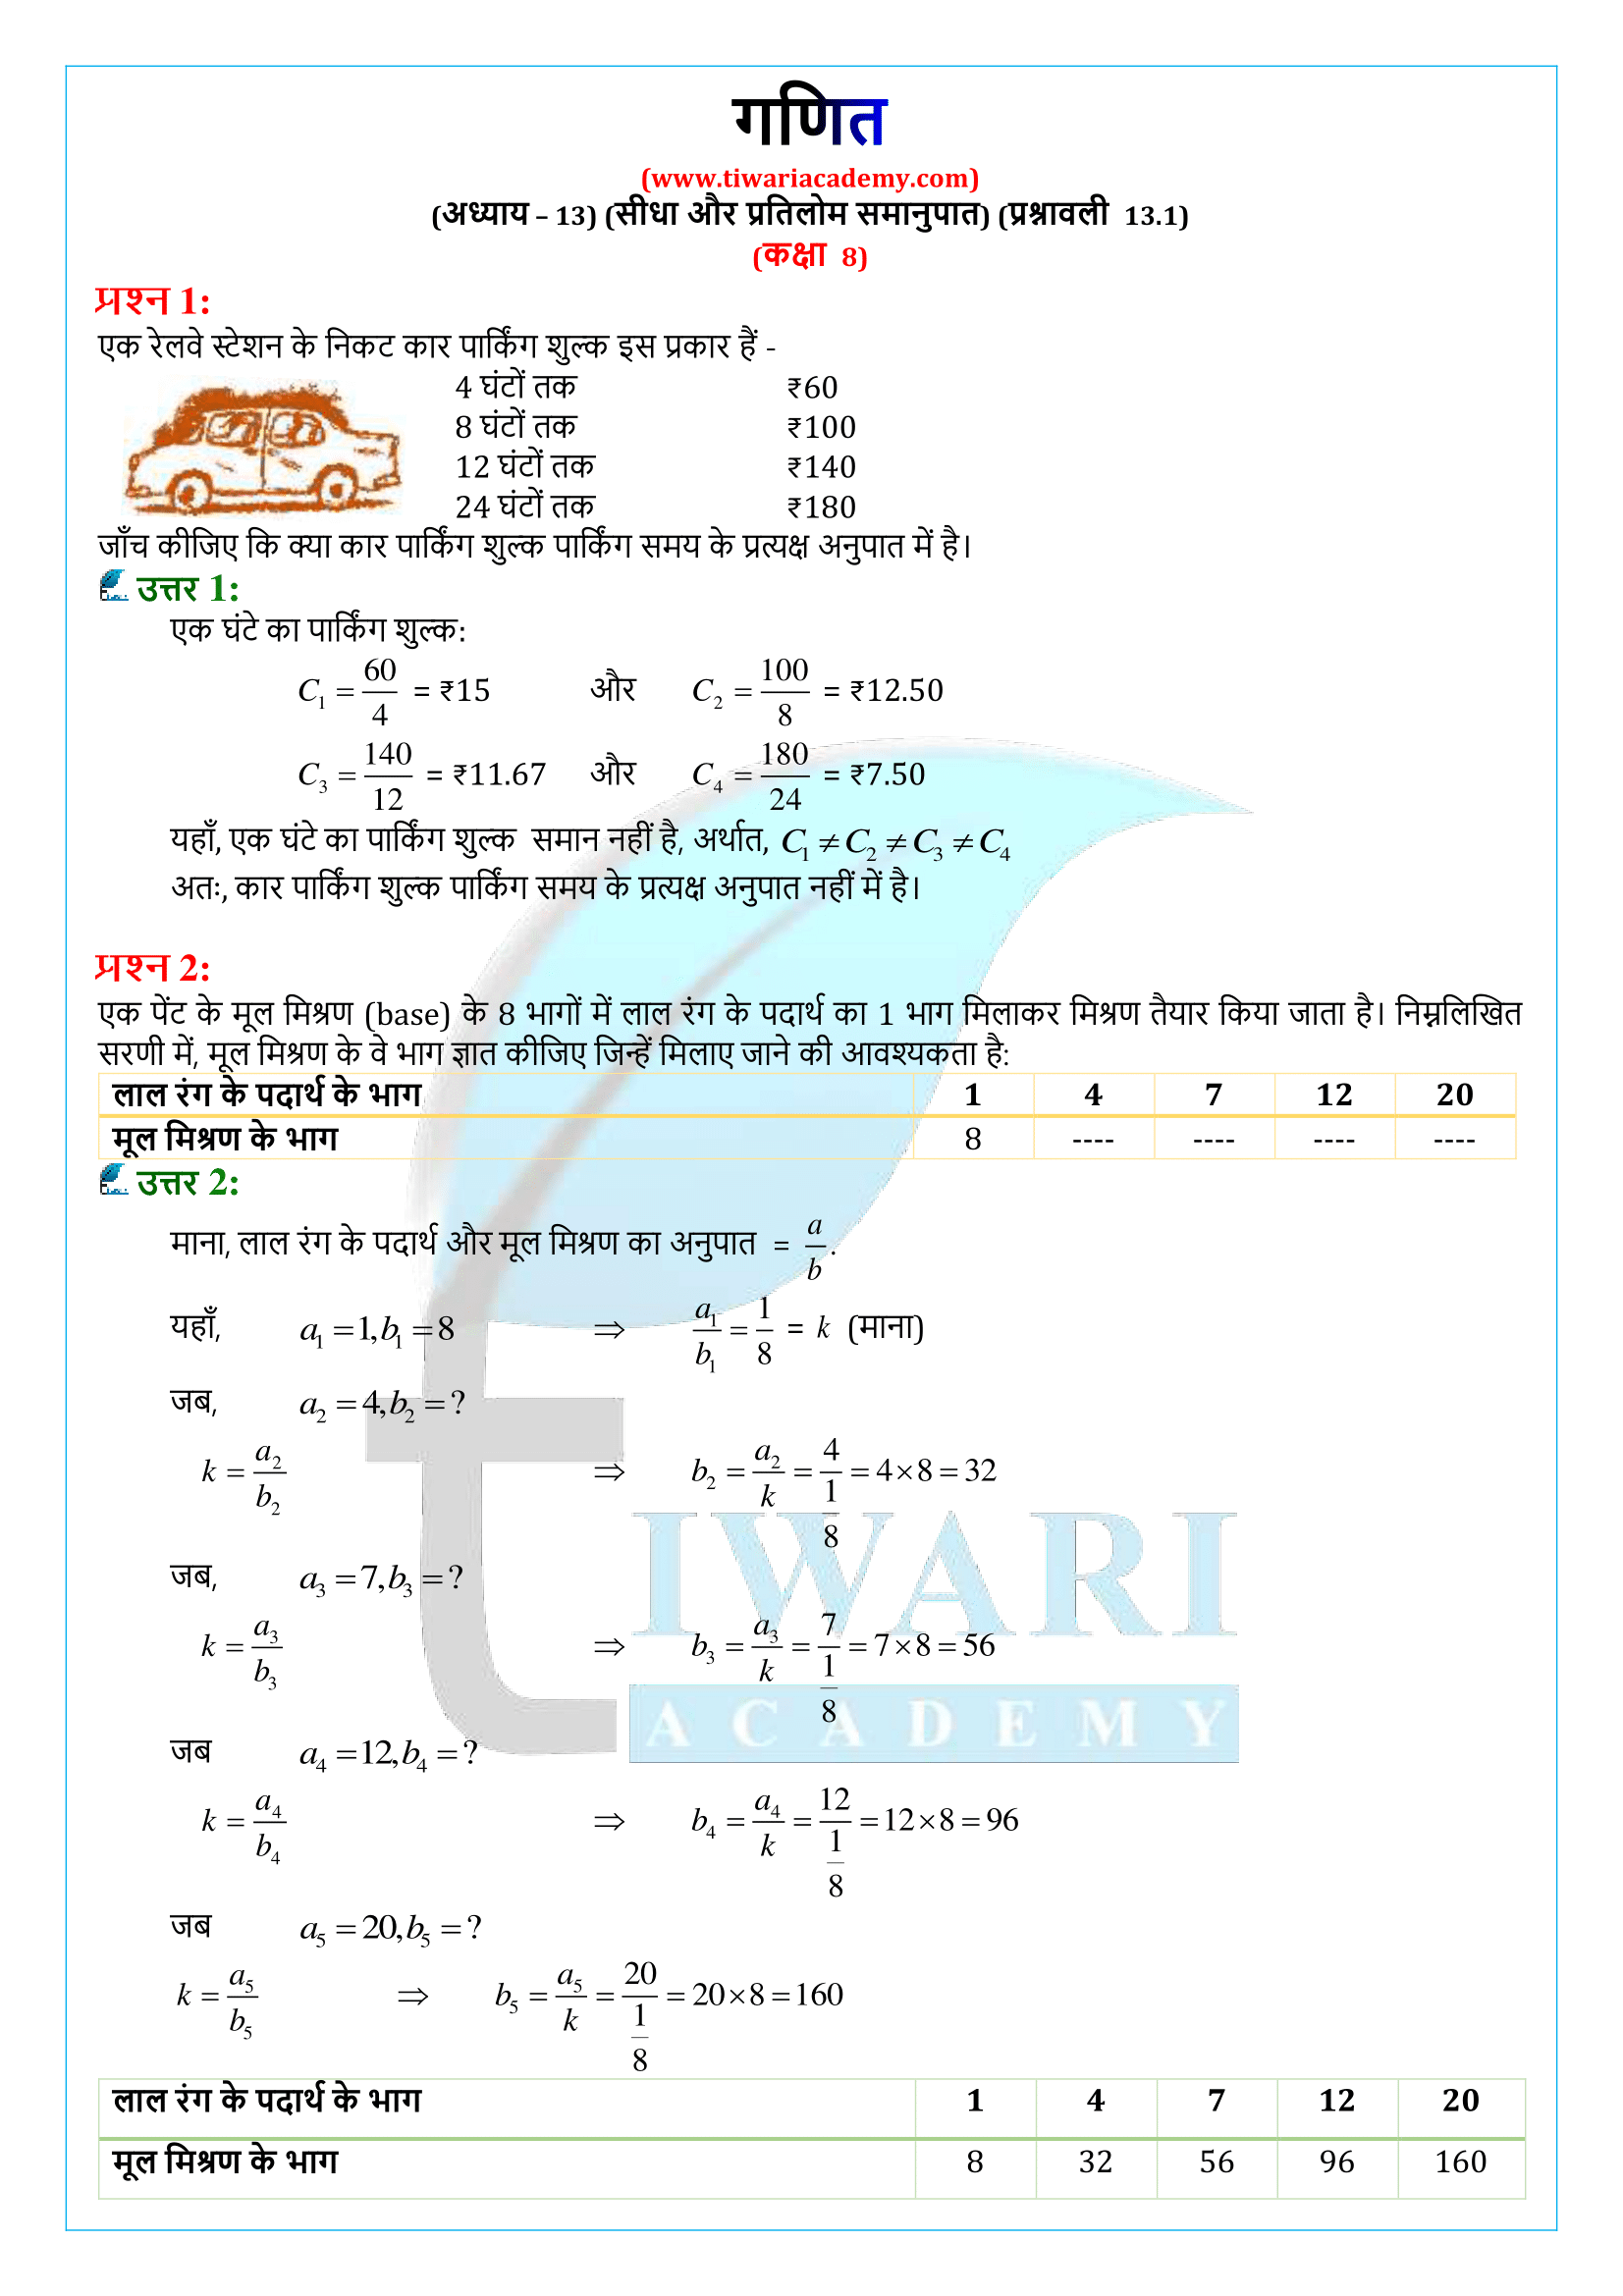 कक्षा 8 गणित प्रश्नावली 13.1 के हल